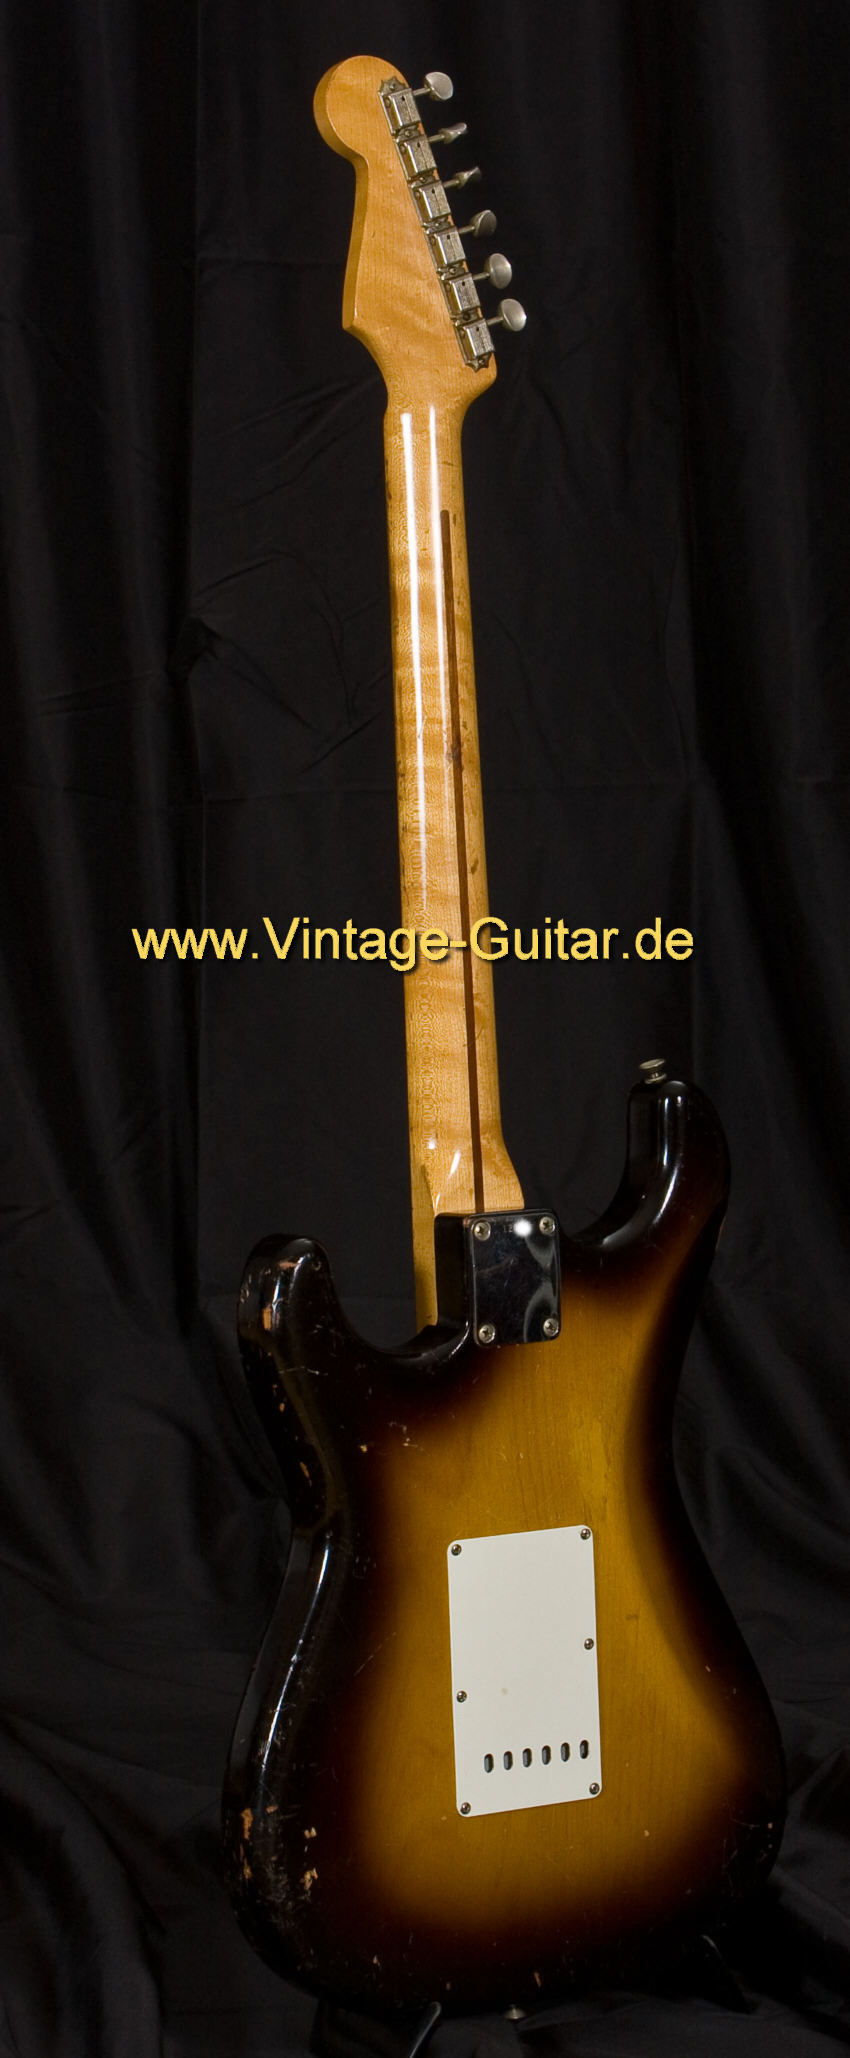 A-Fender-Stratocaster-1956-sunburst-b.jpg